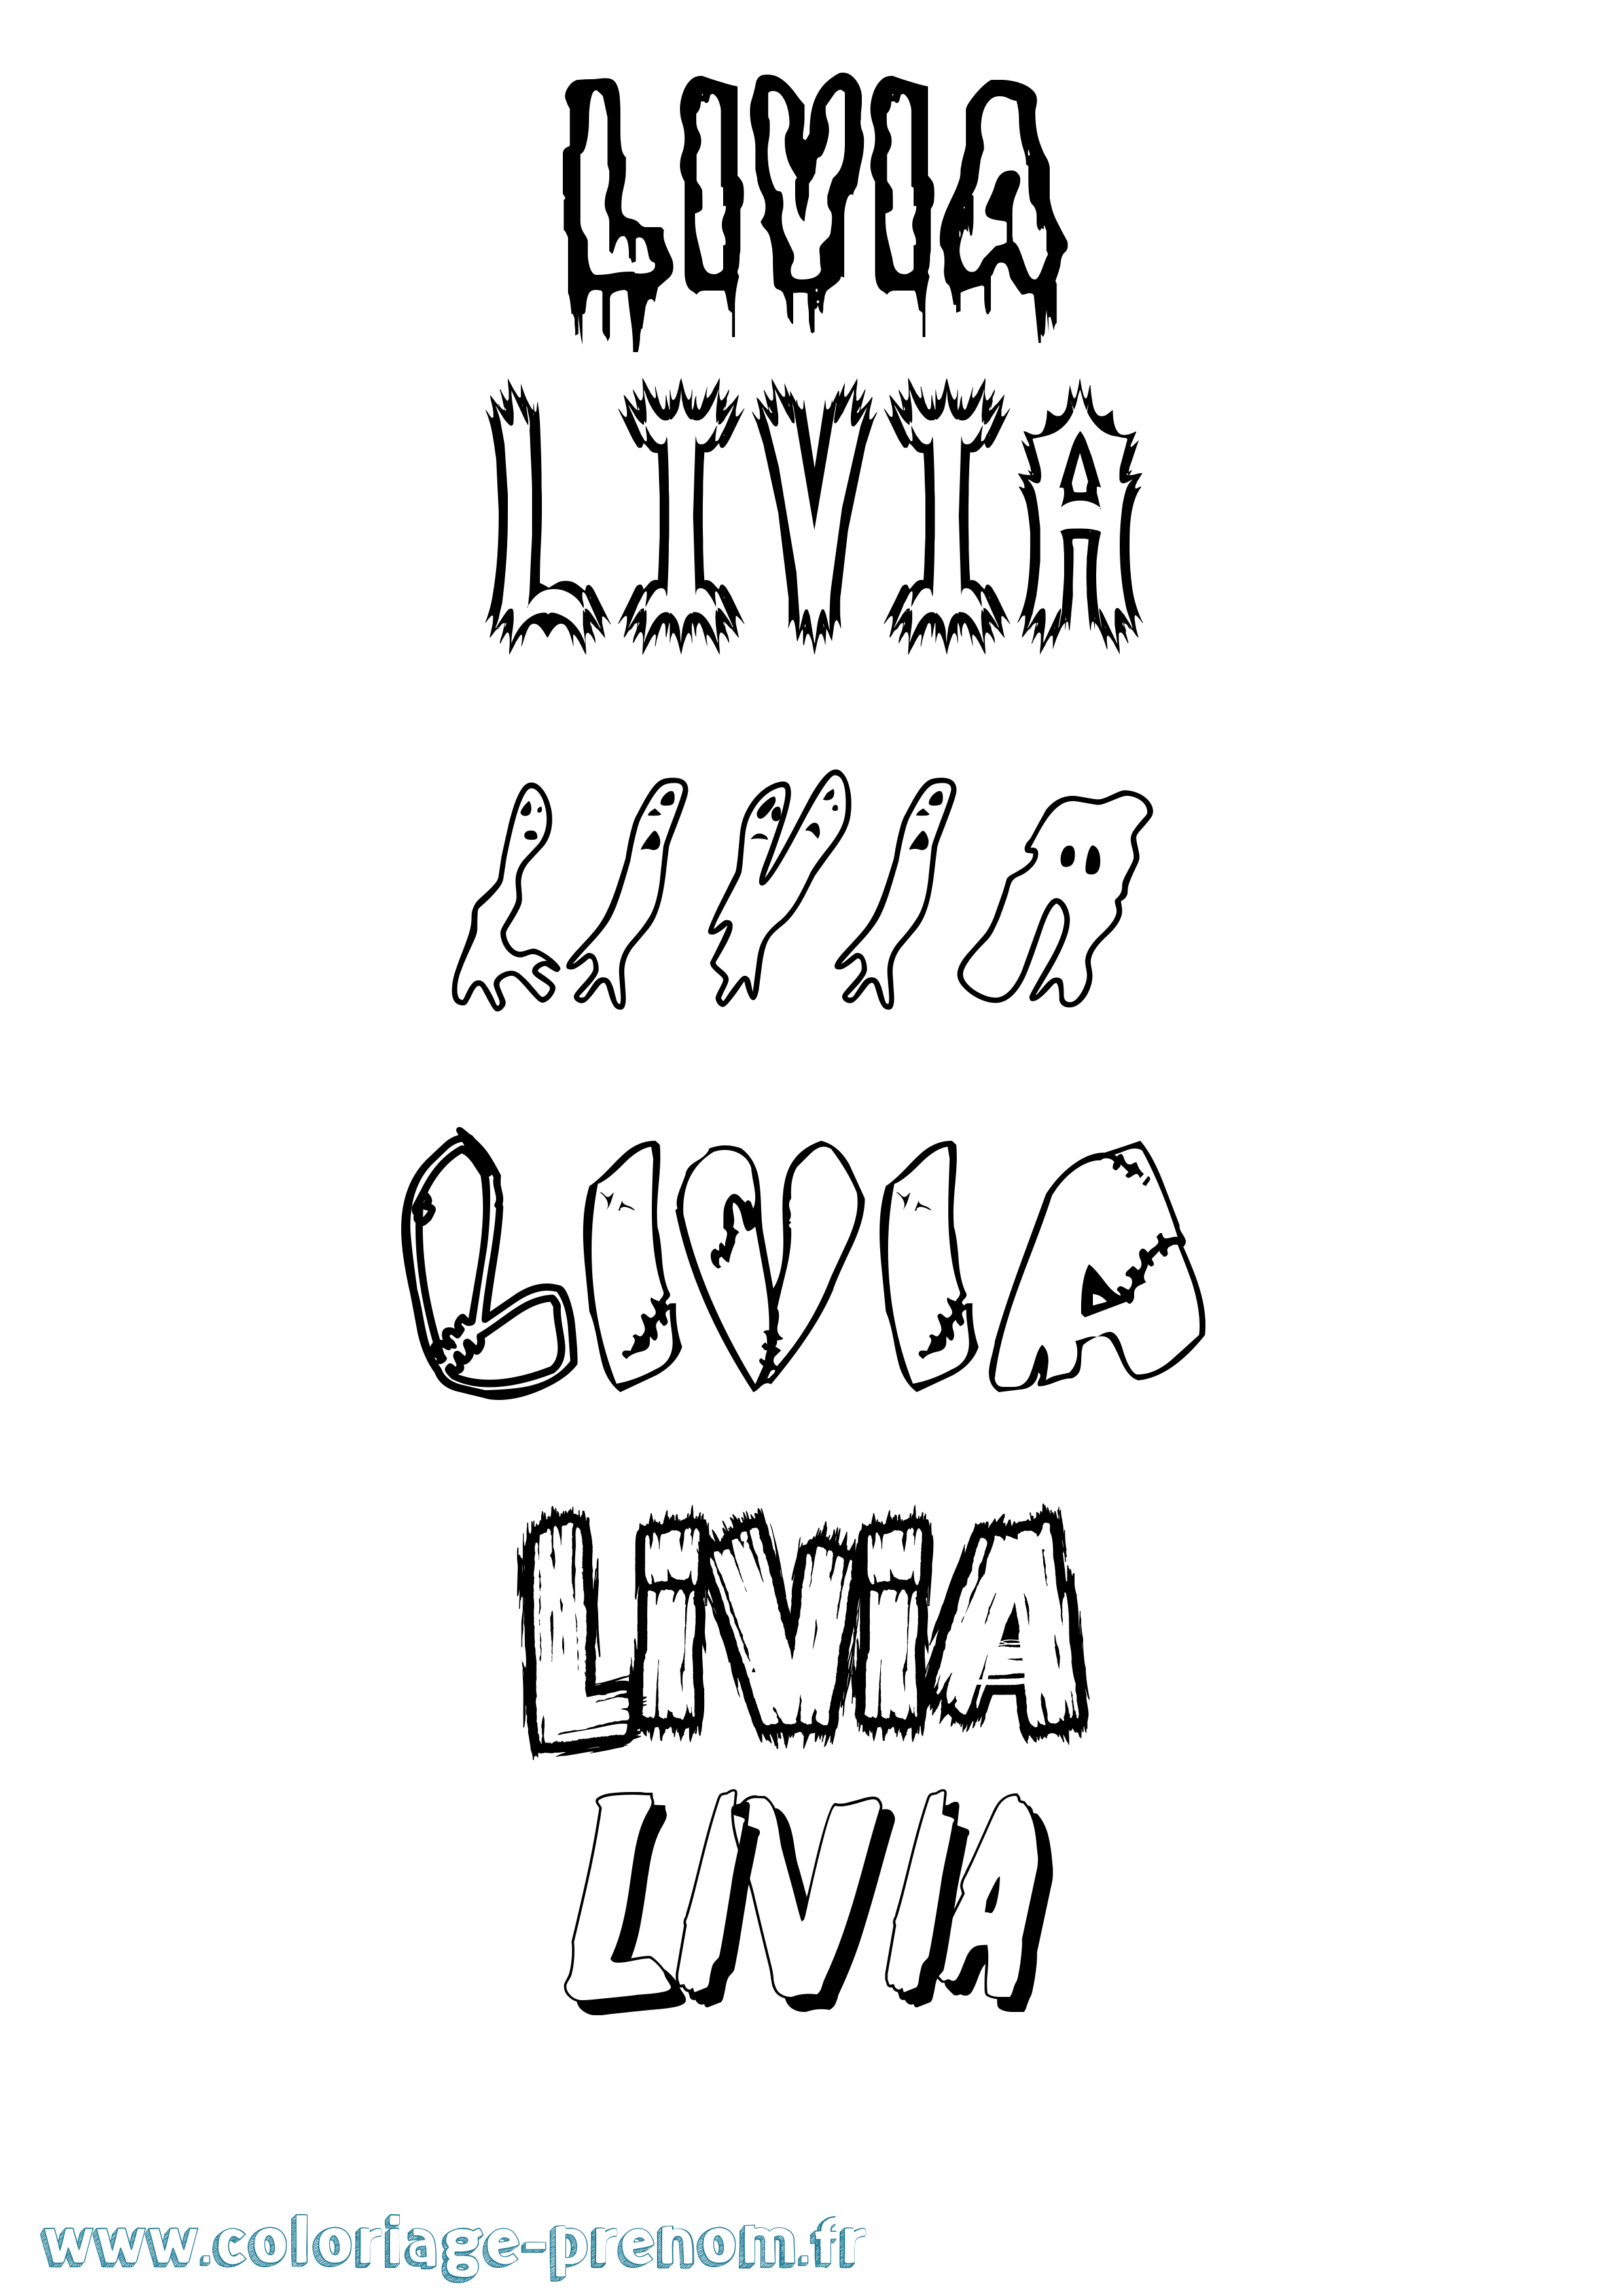 Coloriage prénom Livia